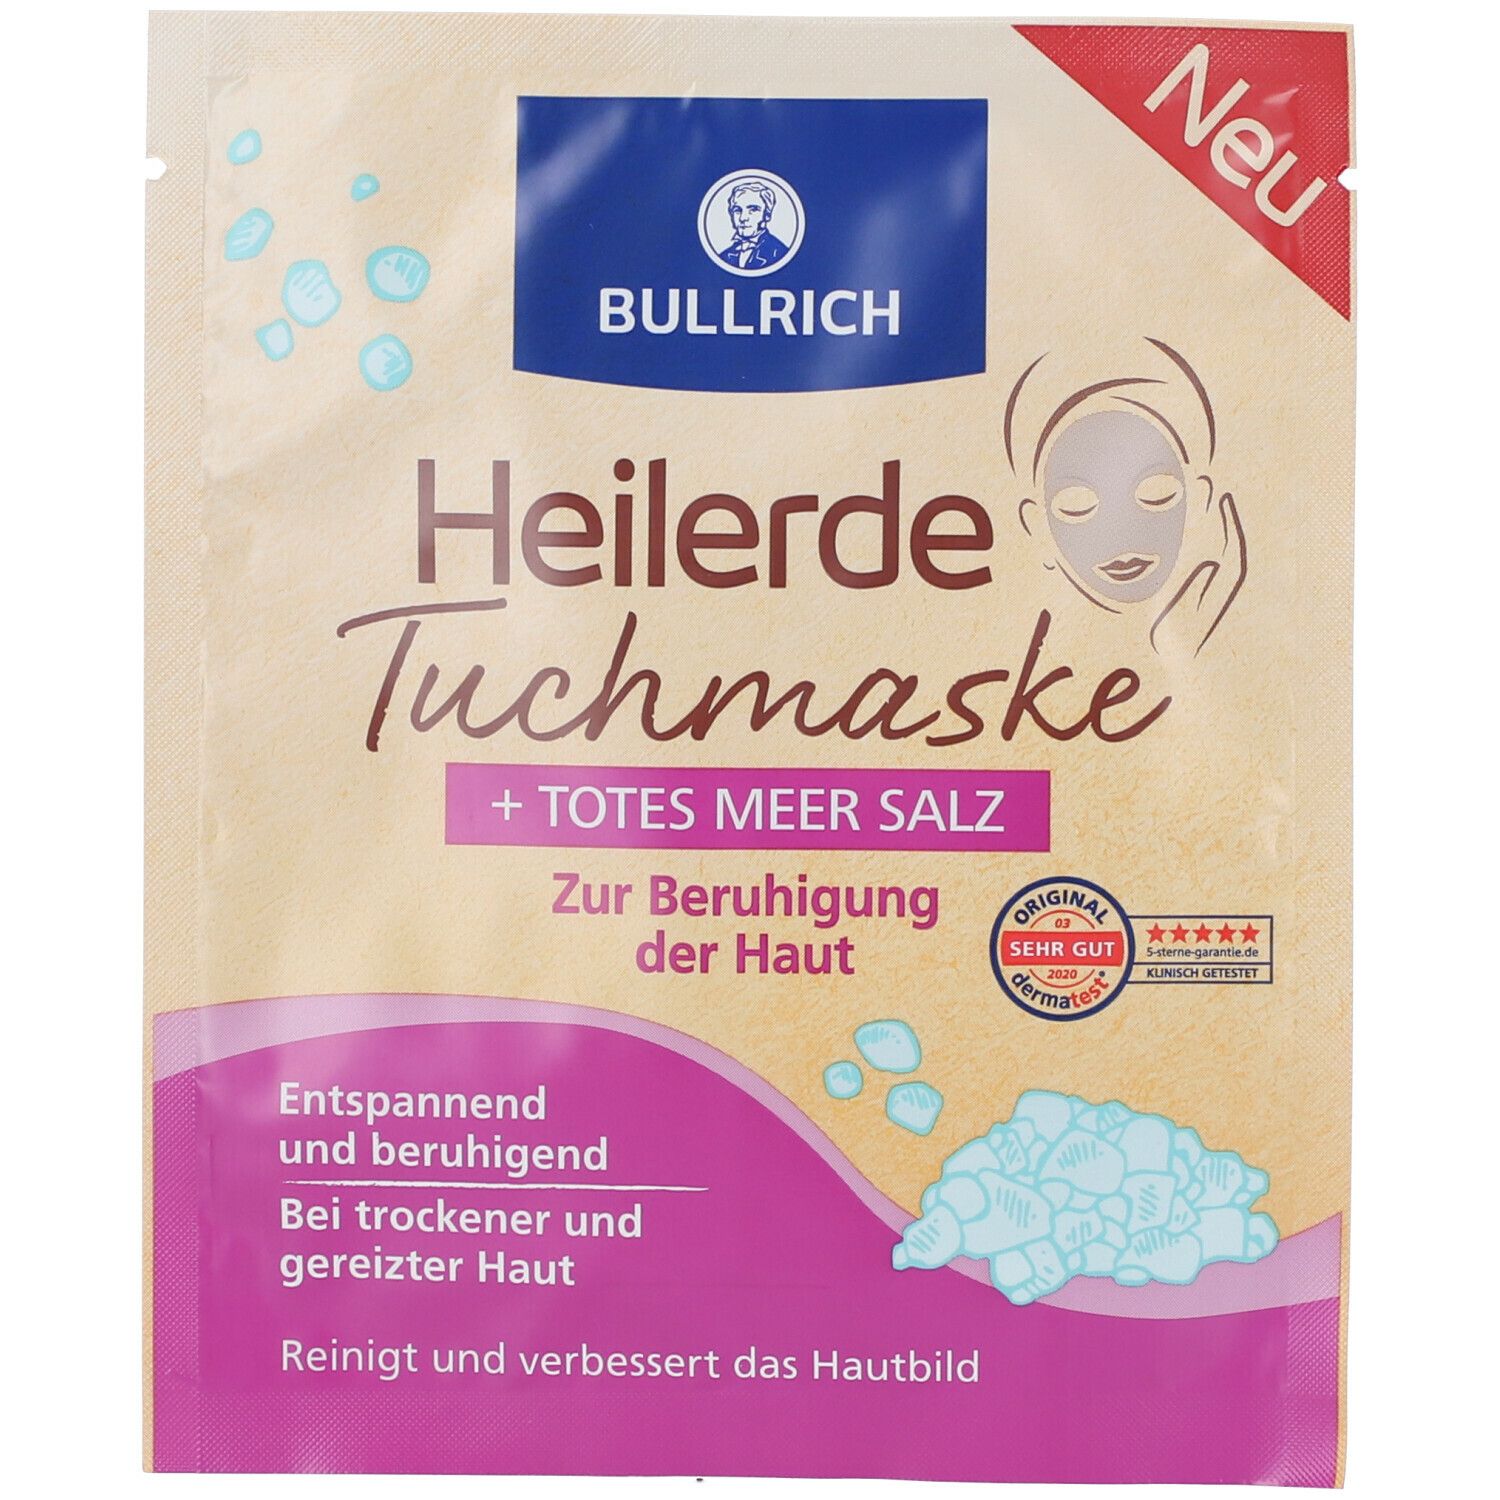 Image of BULLRICH Heilerde Tuchmaske + Totes Meersalz